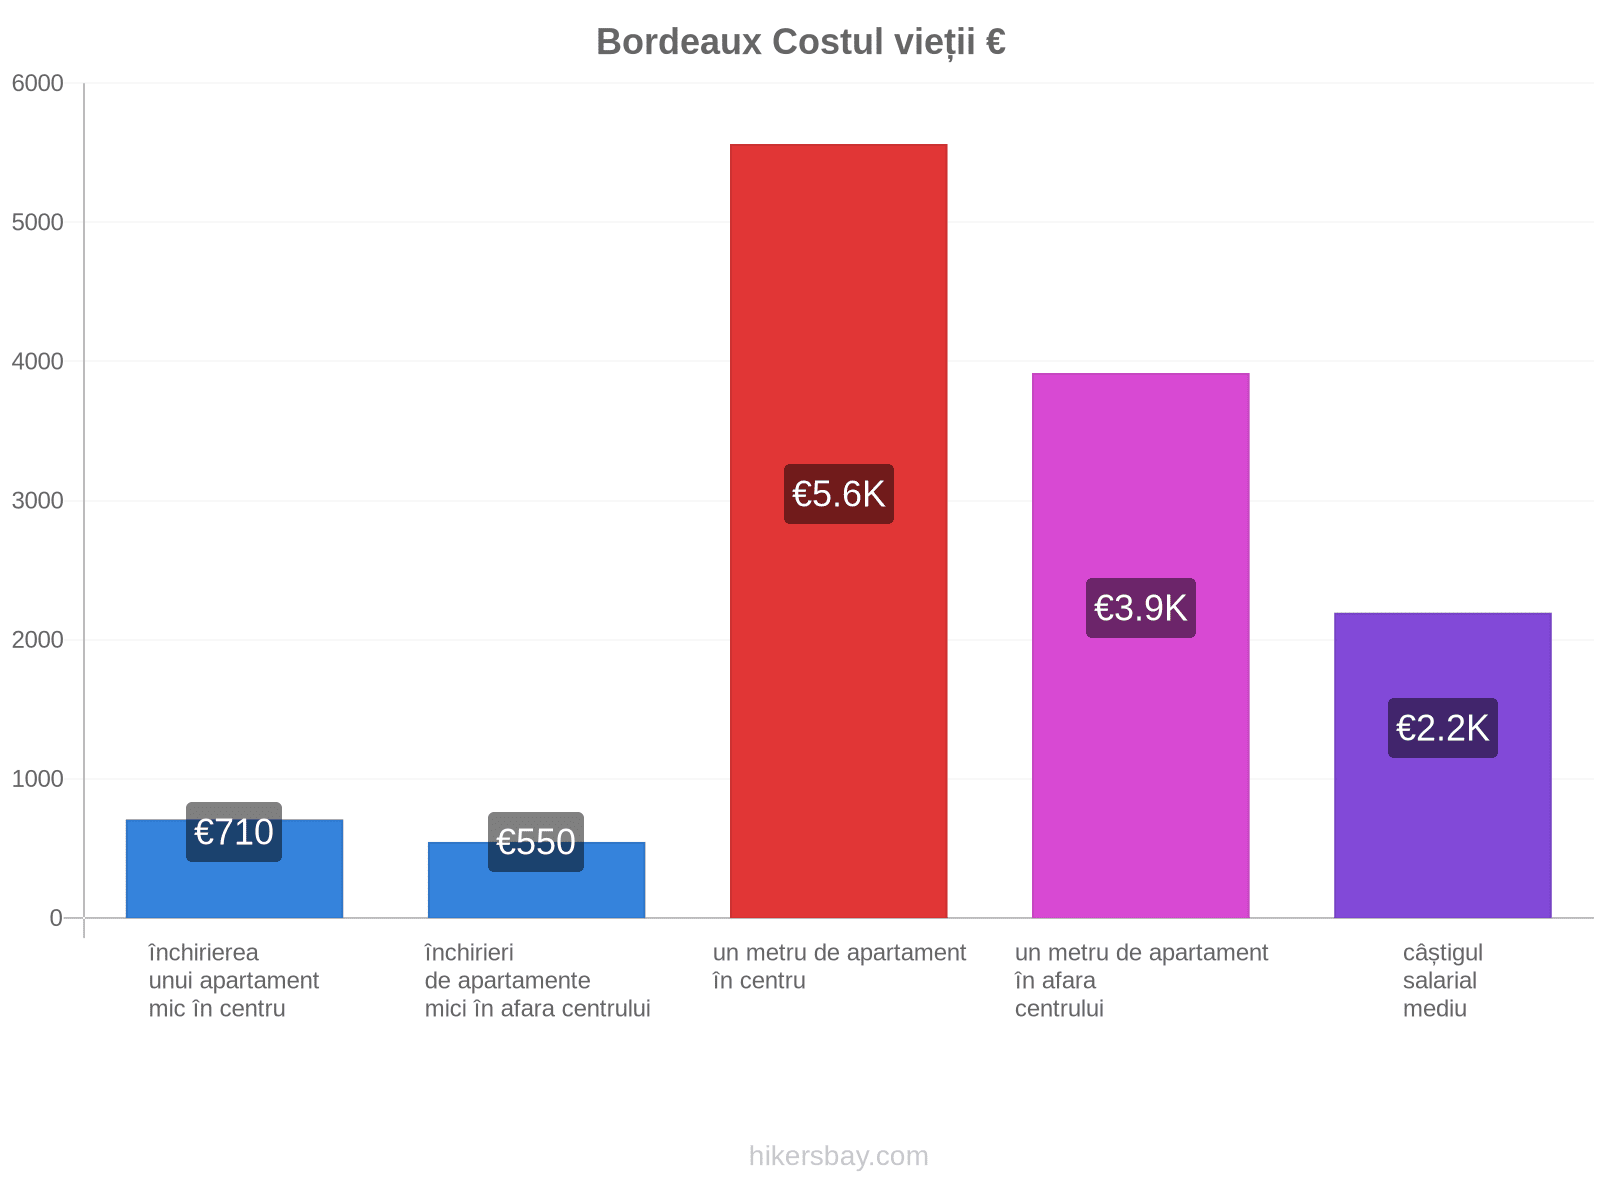 Bordeaux costul vieții hikersbay.com